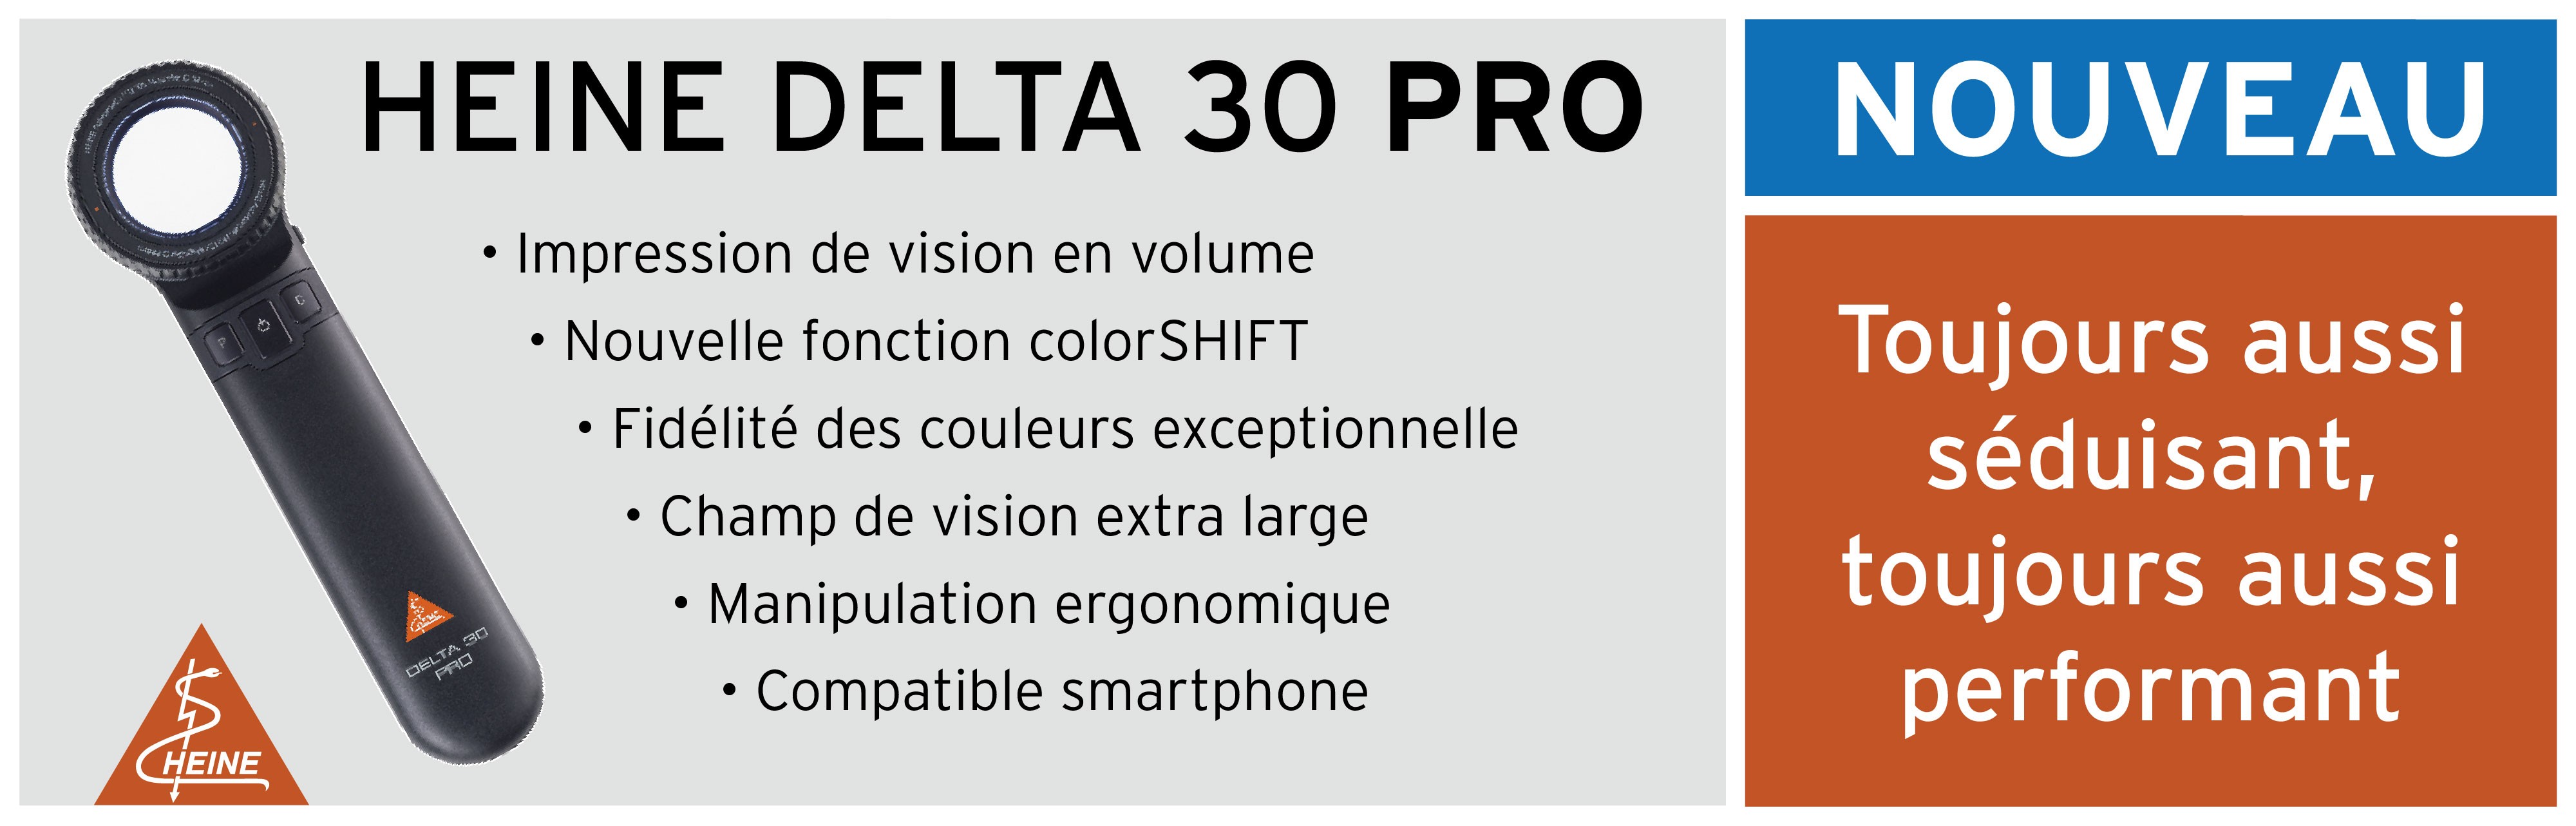 HEINE Delta 30 Pro